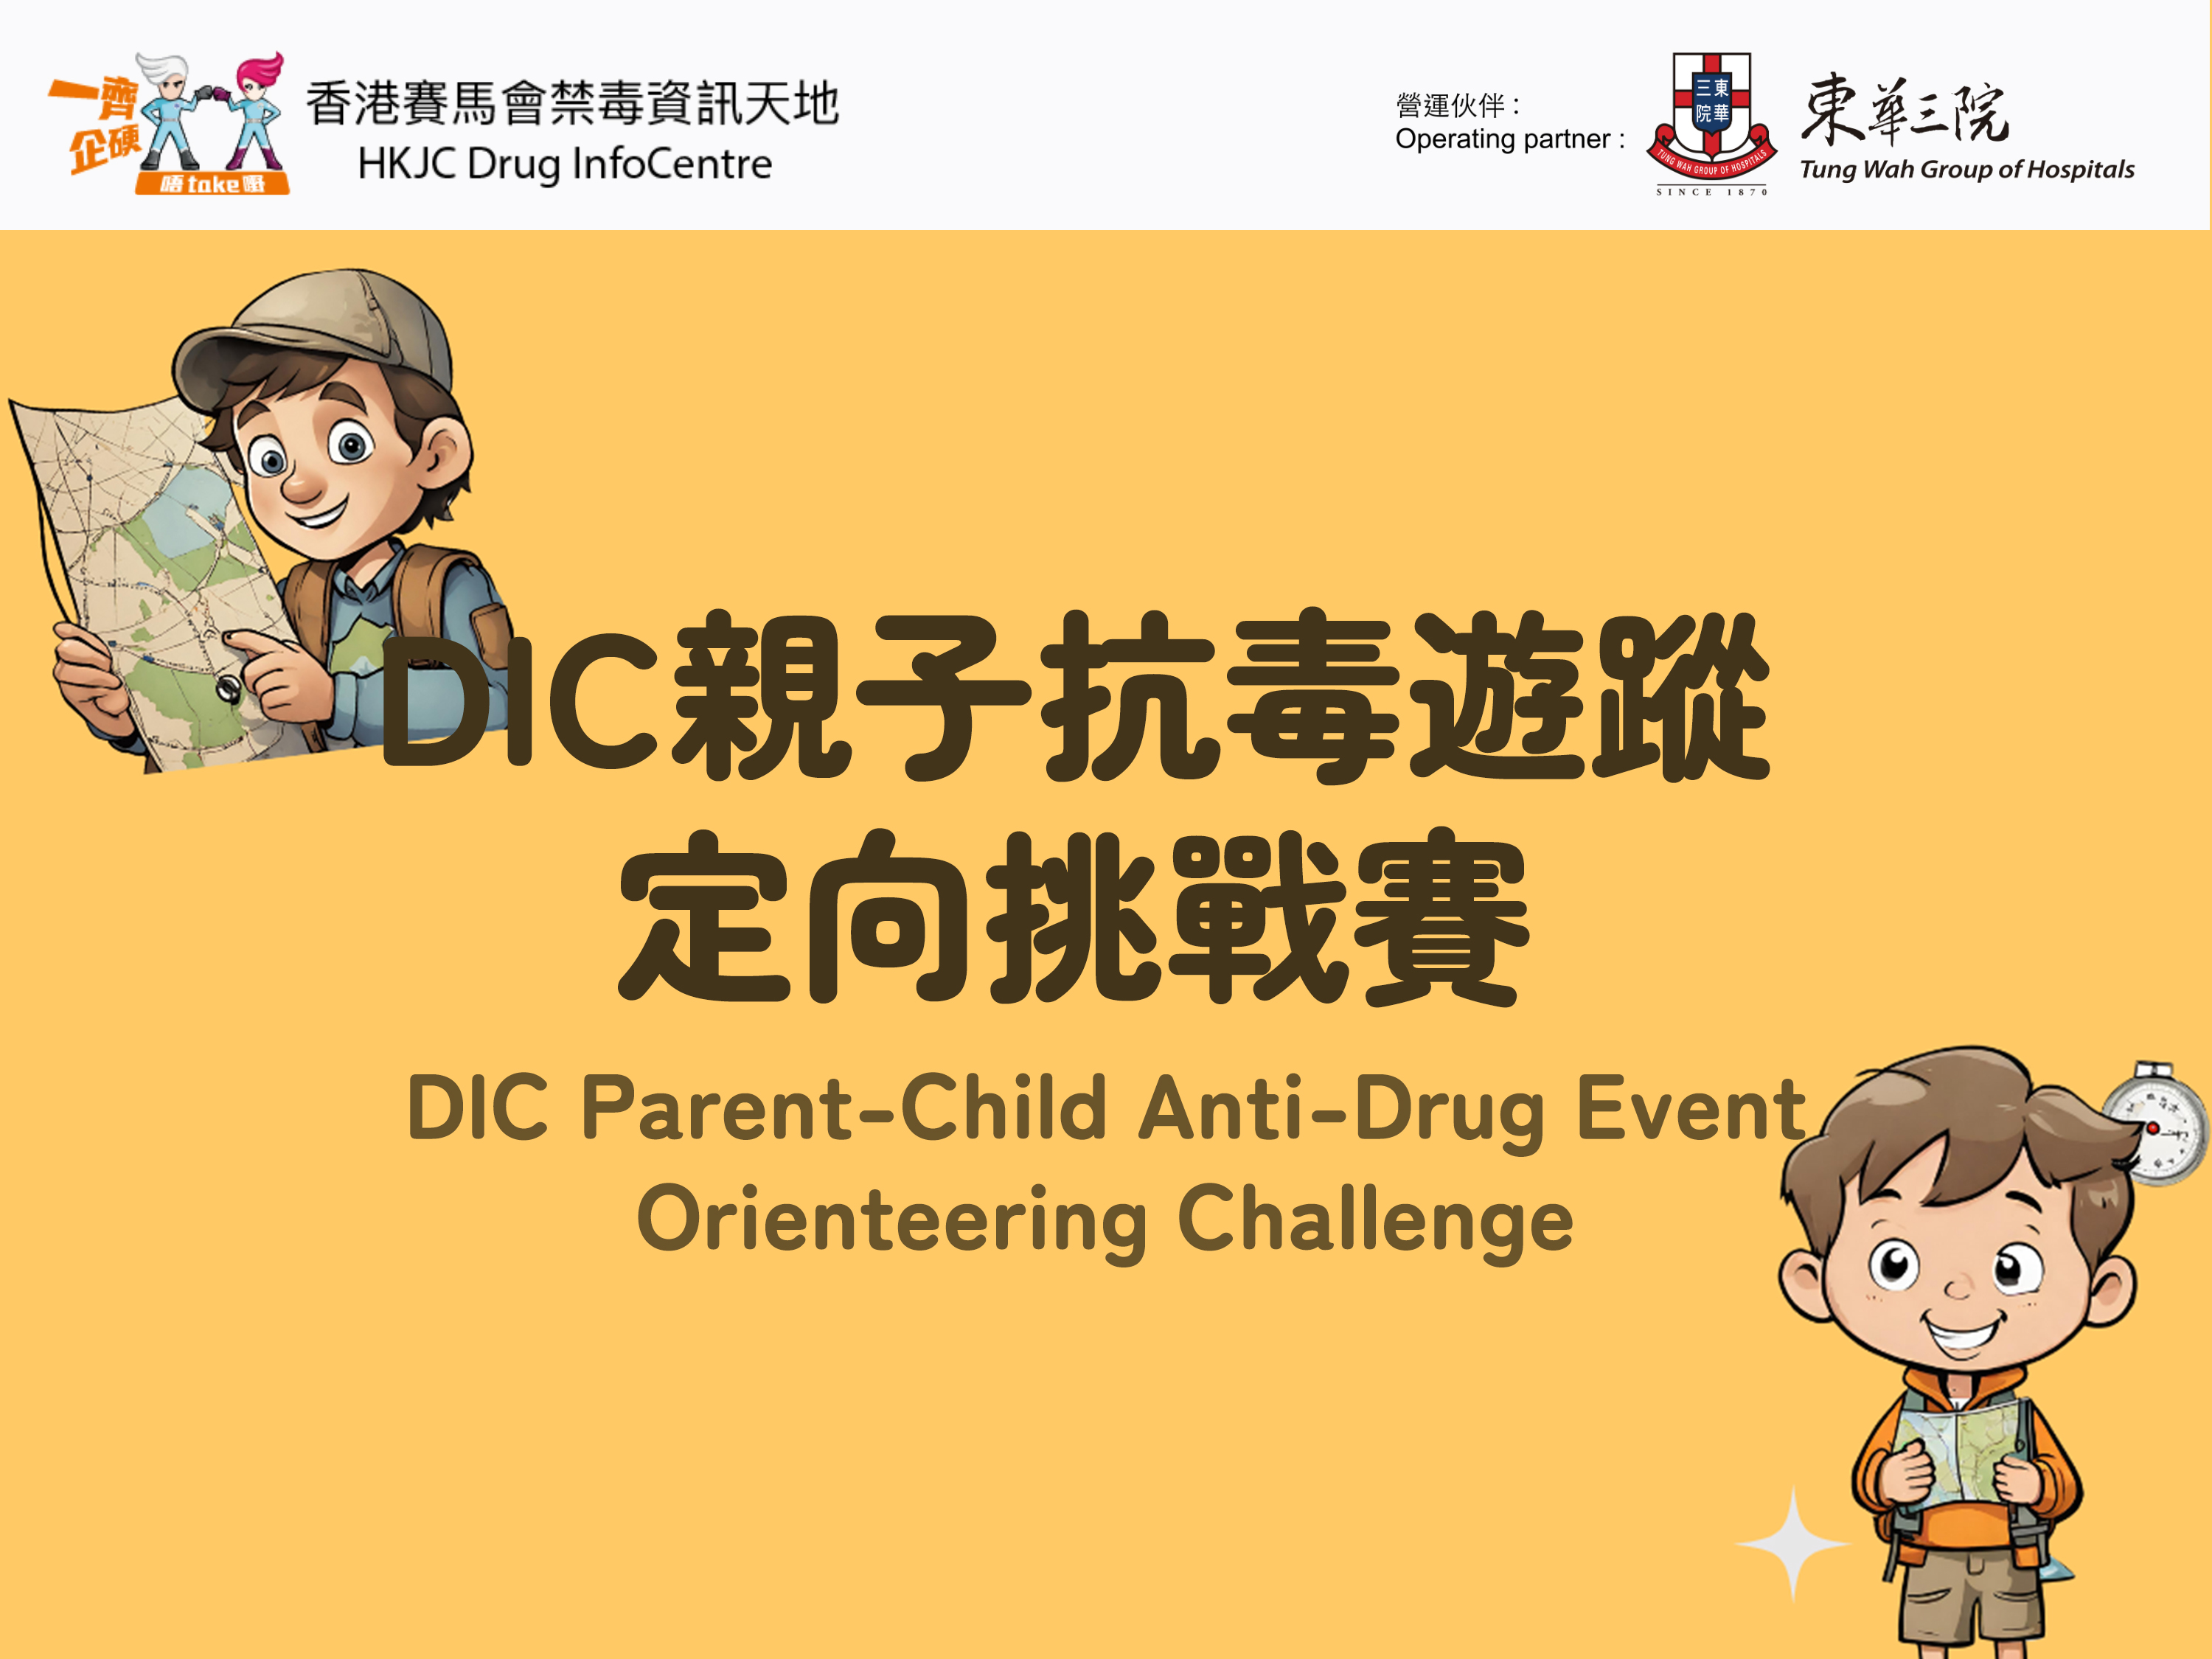 DIC Parent-Child Anti-Drug Event - Orienteering Challenge  